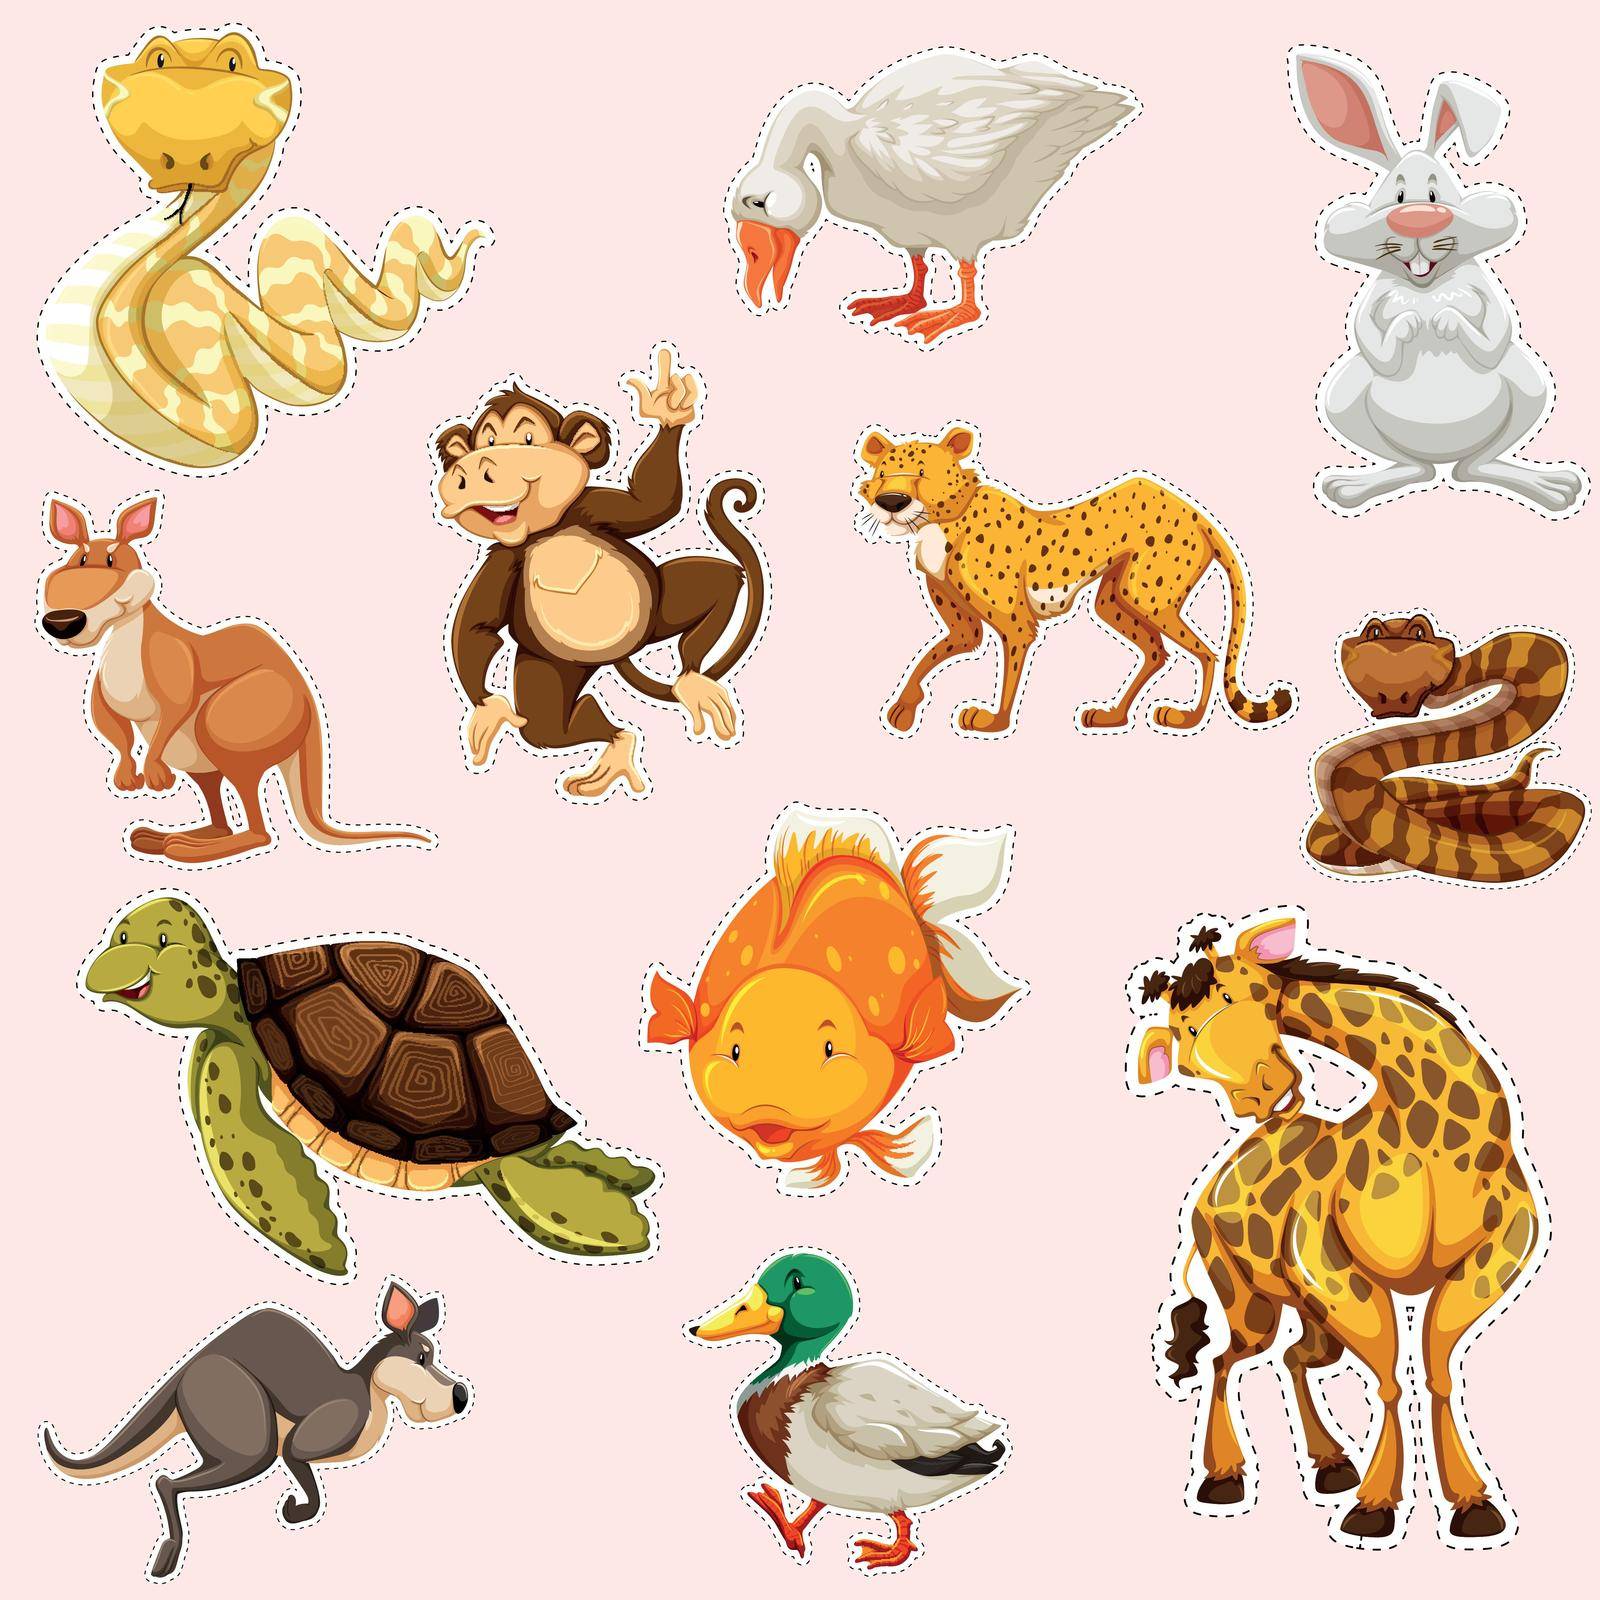 Sticker design for wild animals illustration